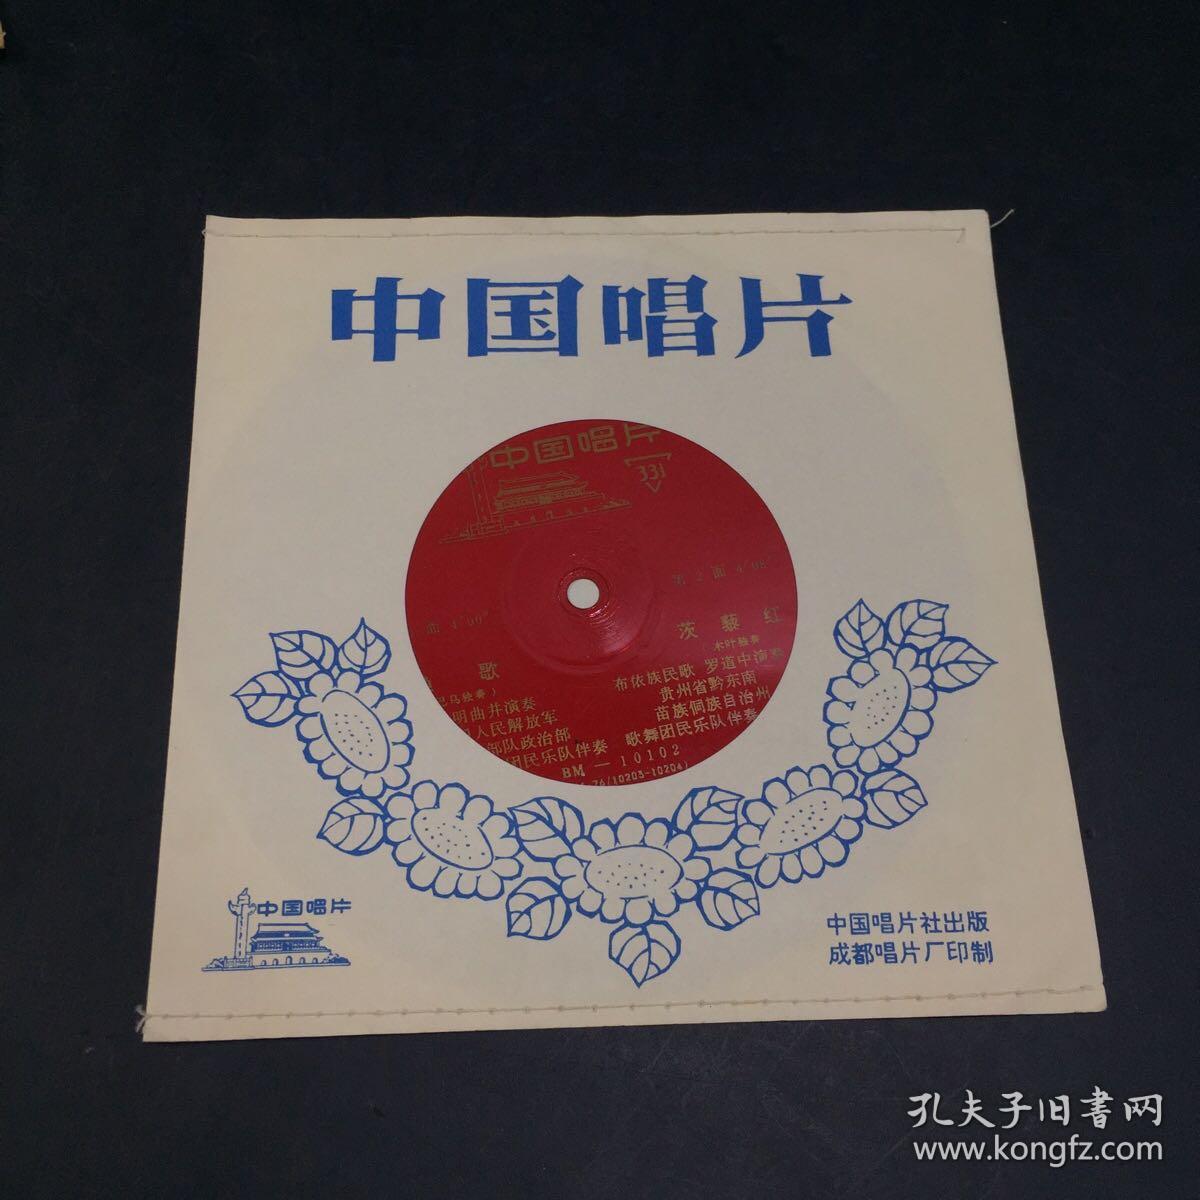 中国唱片——黑孩子赛琳娜、节日的天山、鹧鸪飞、渔歌【4张合售    薄膜唱片】